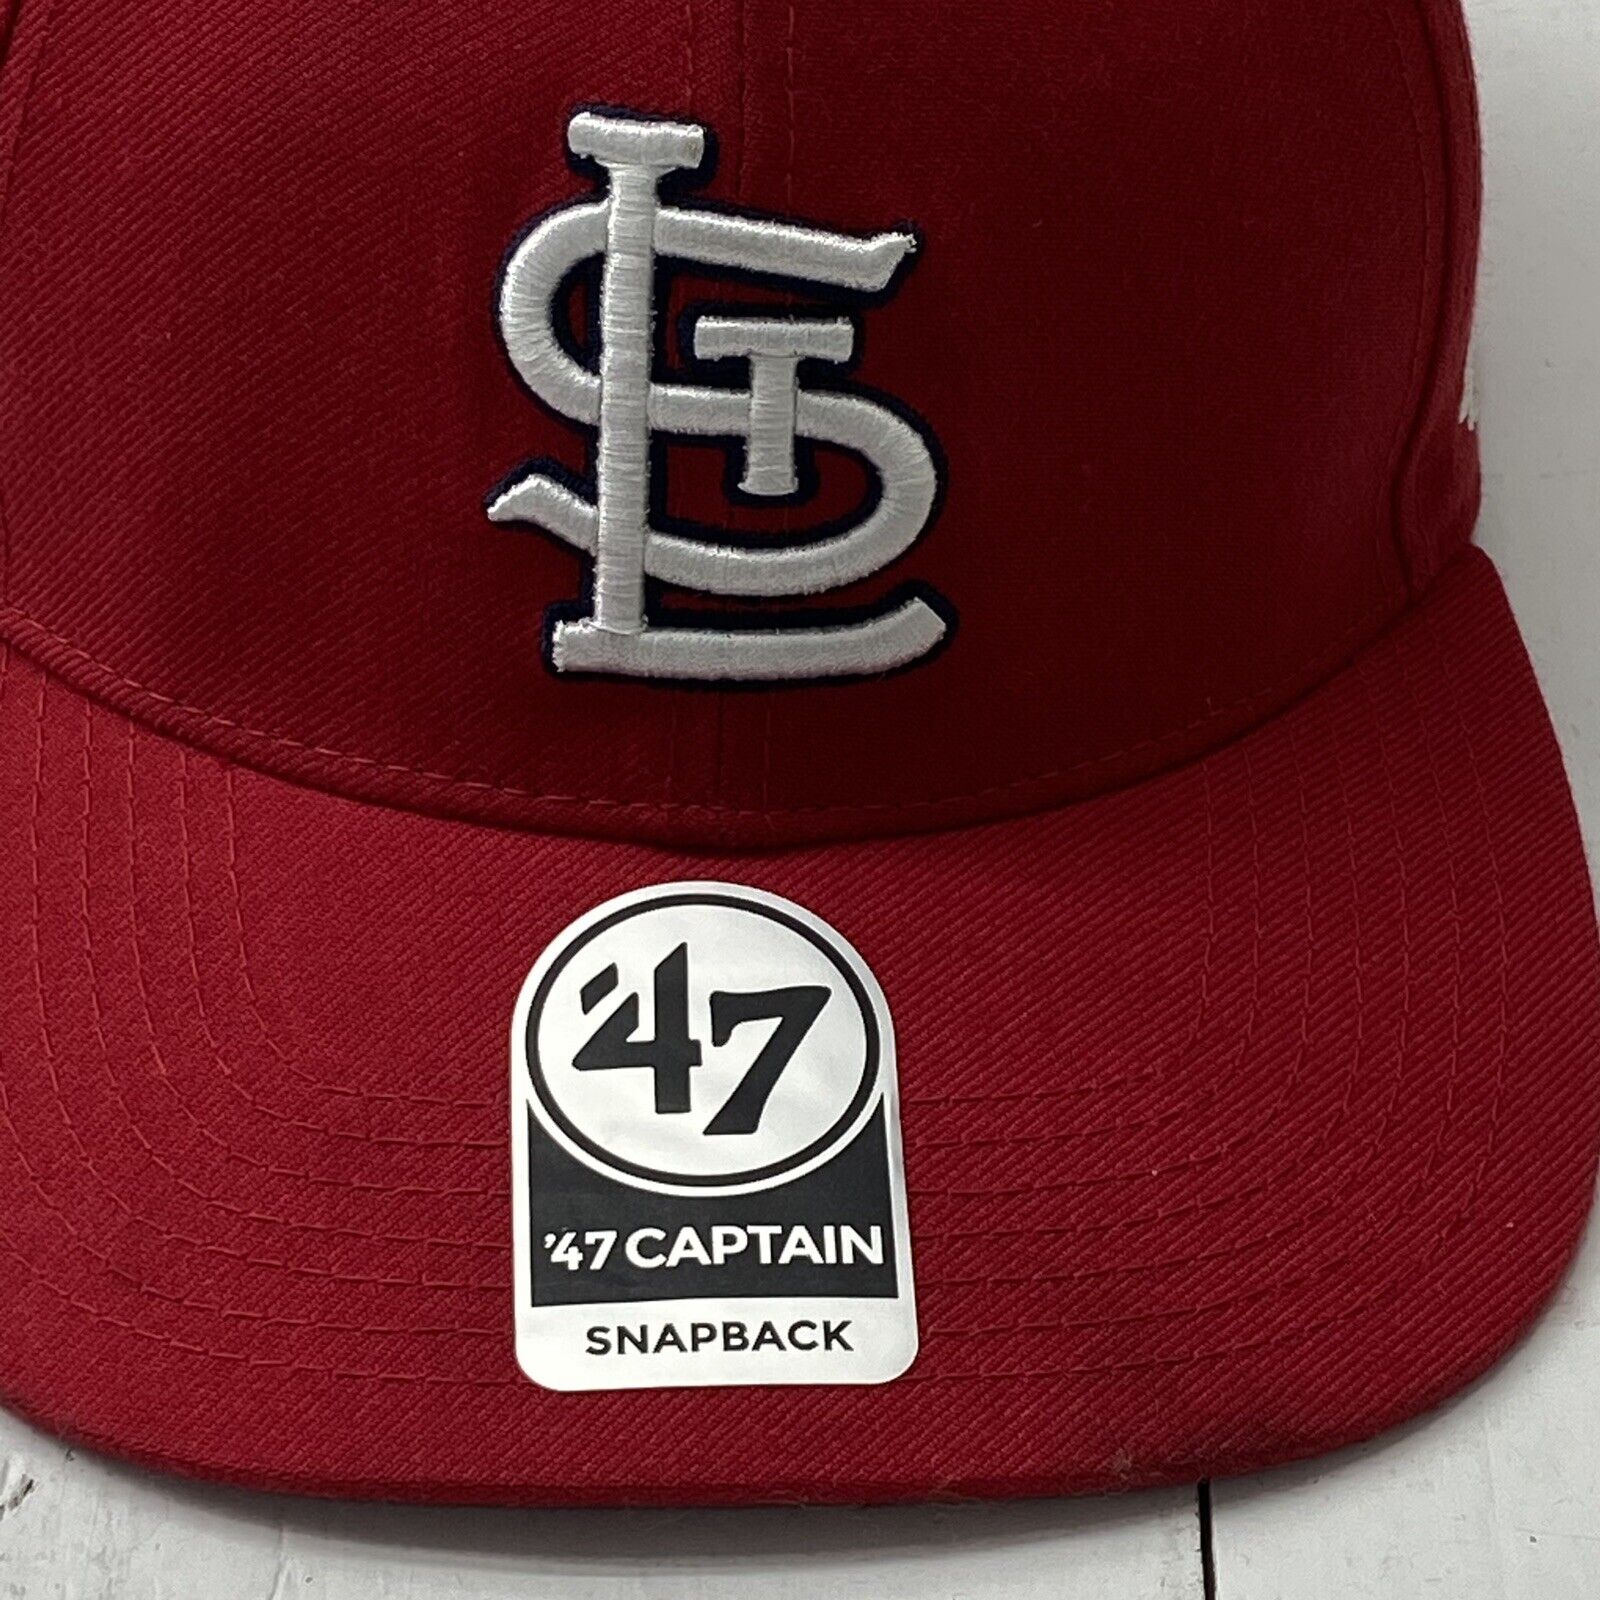 Men's '47 Red St. Louis Cardinals Breakout MVP Trucker Adjustable Hat